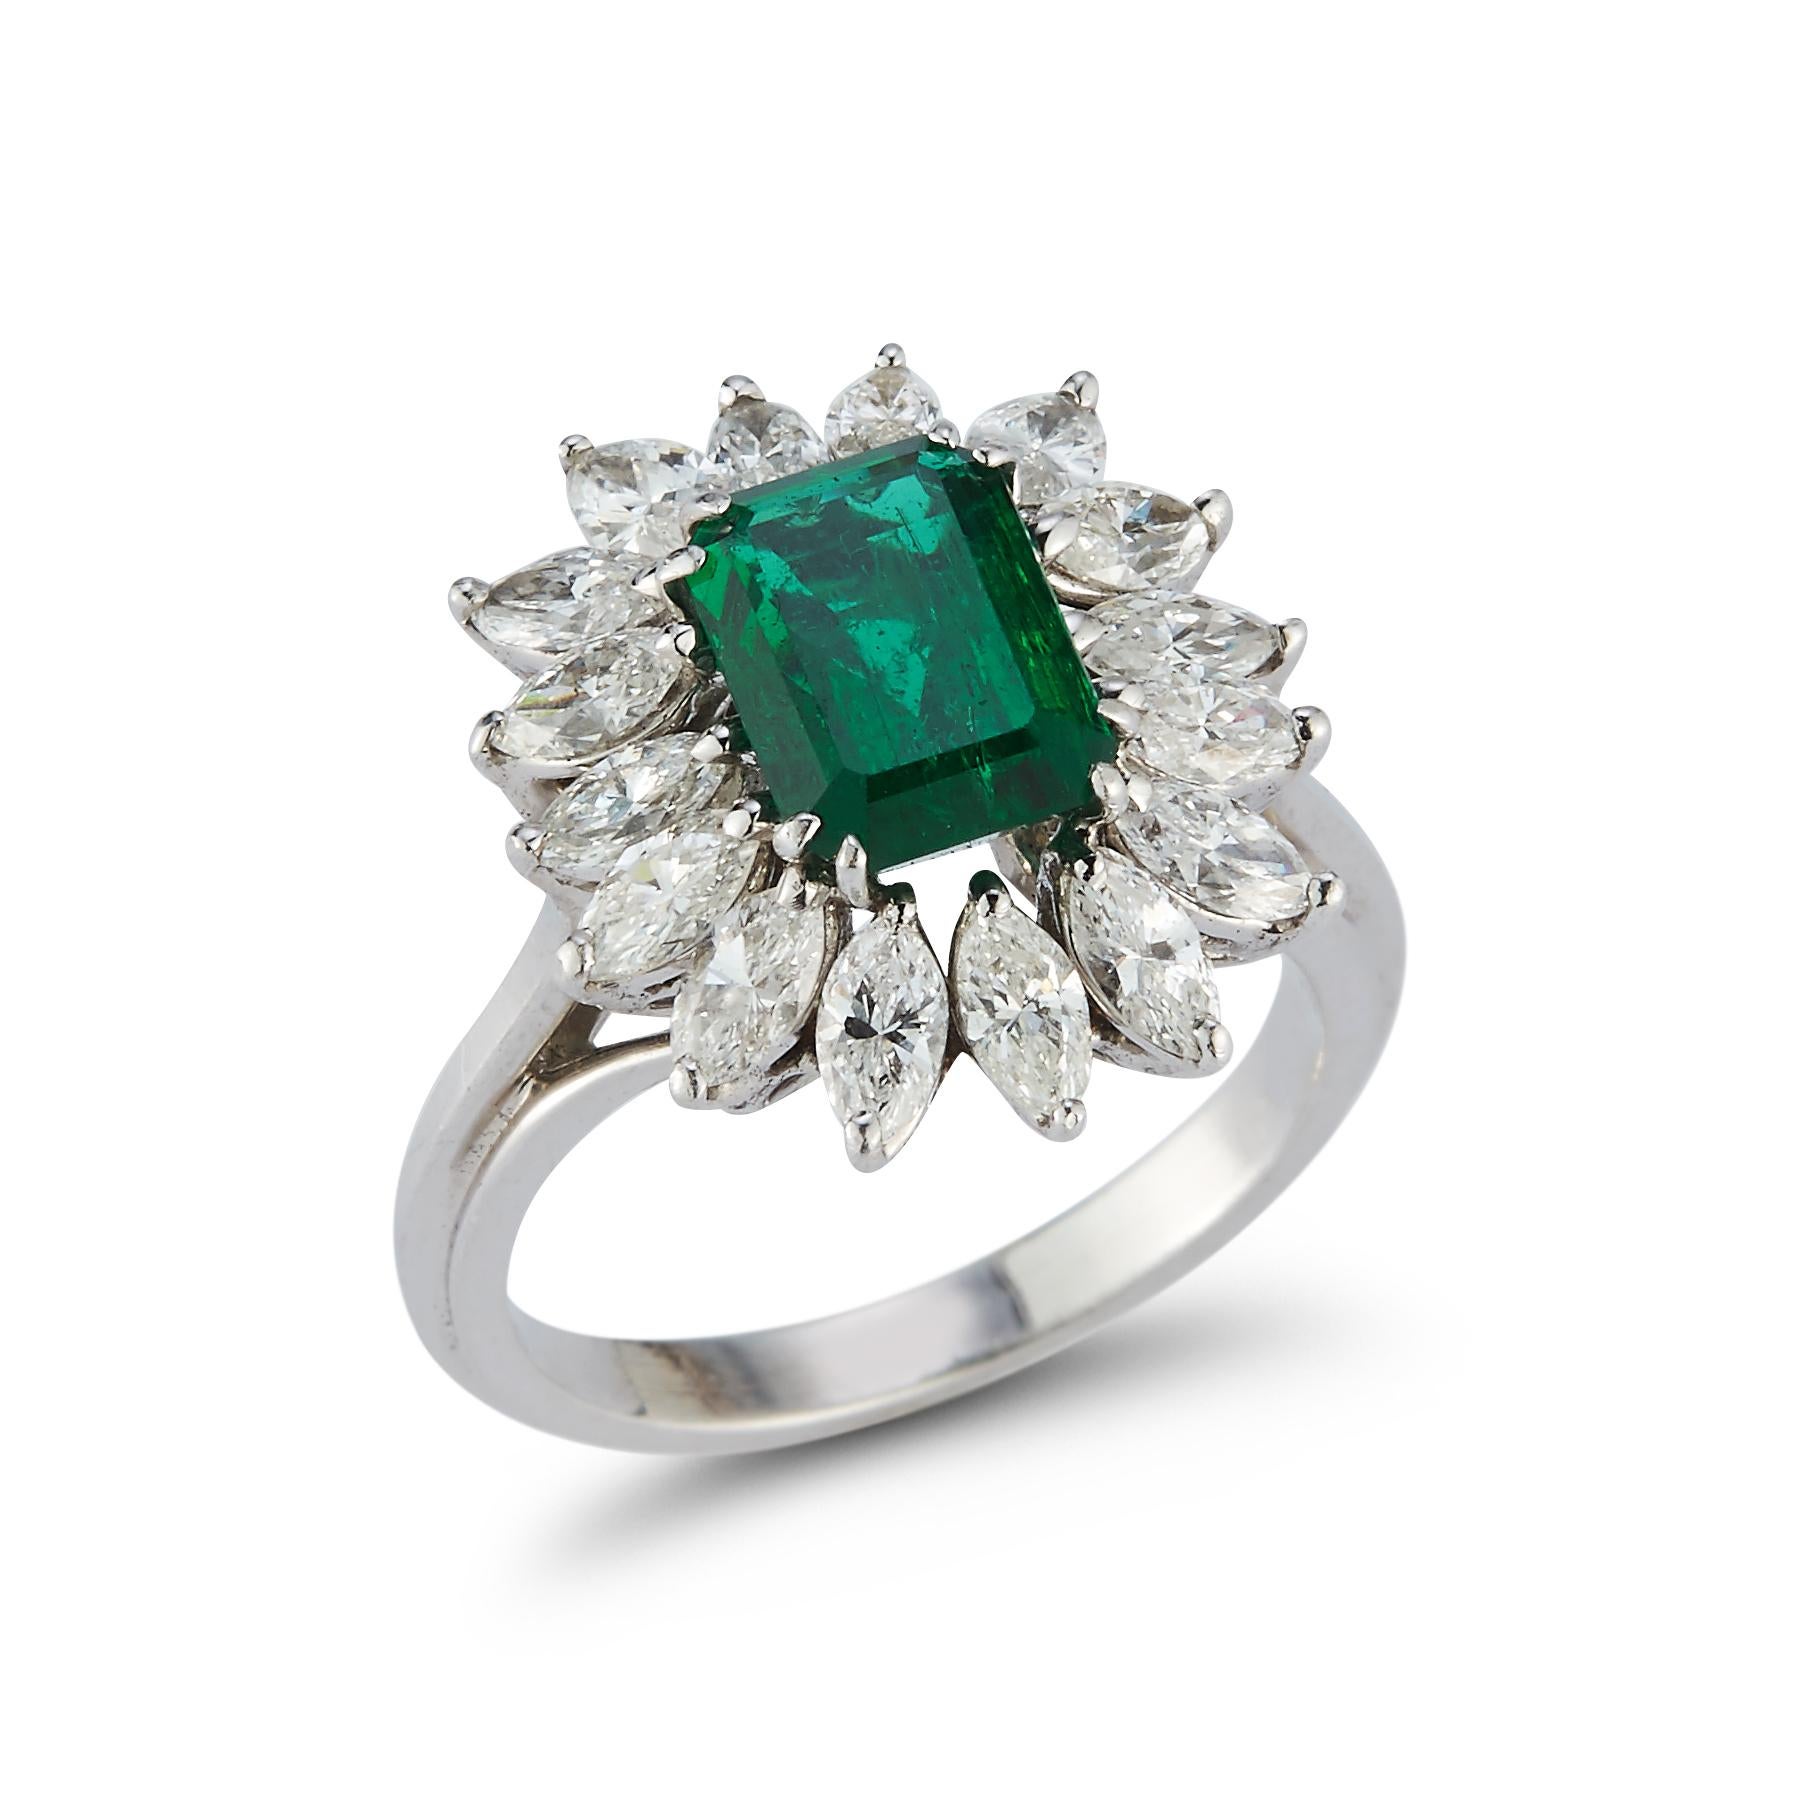 2.00 Ct Emerald Cut Emerald & Diamond Ring 1 Smaragd umgeben von 16 Diamanten im Marquise-Schliff in Platin gefasst

Smaragd Gewicht: etwa 2,00 cts 

Gewicht des Diamanten: ca. 1,92 Karat 

Ringgröße: 6

Kostenfrei anpassbar 

